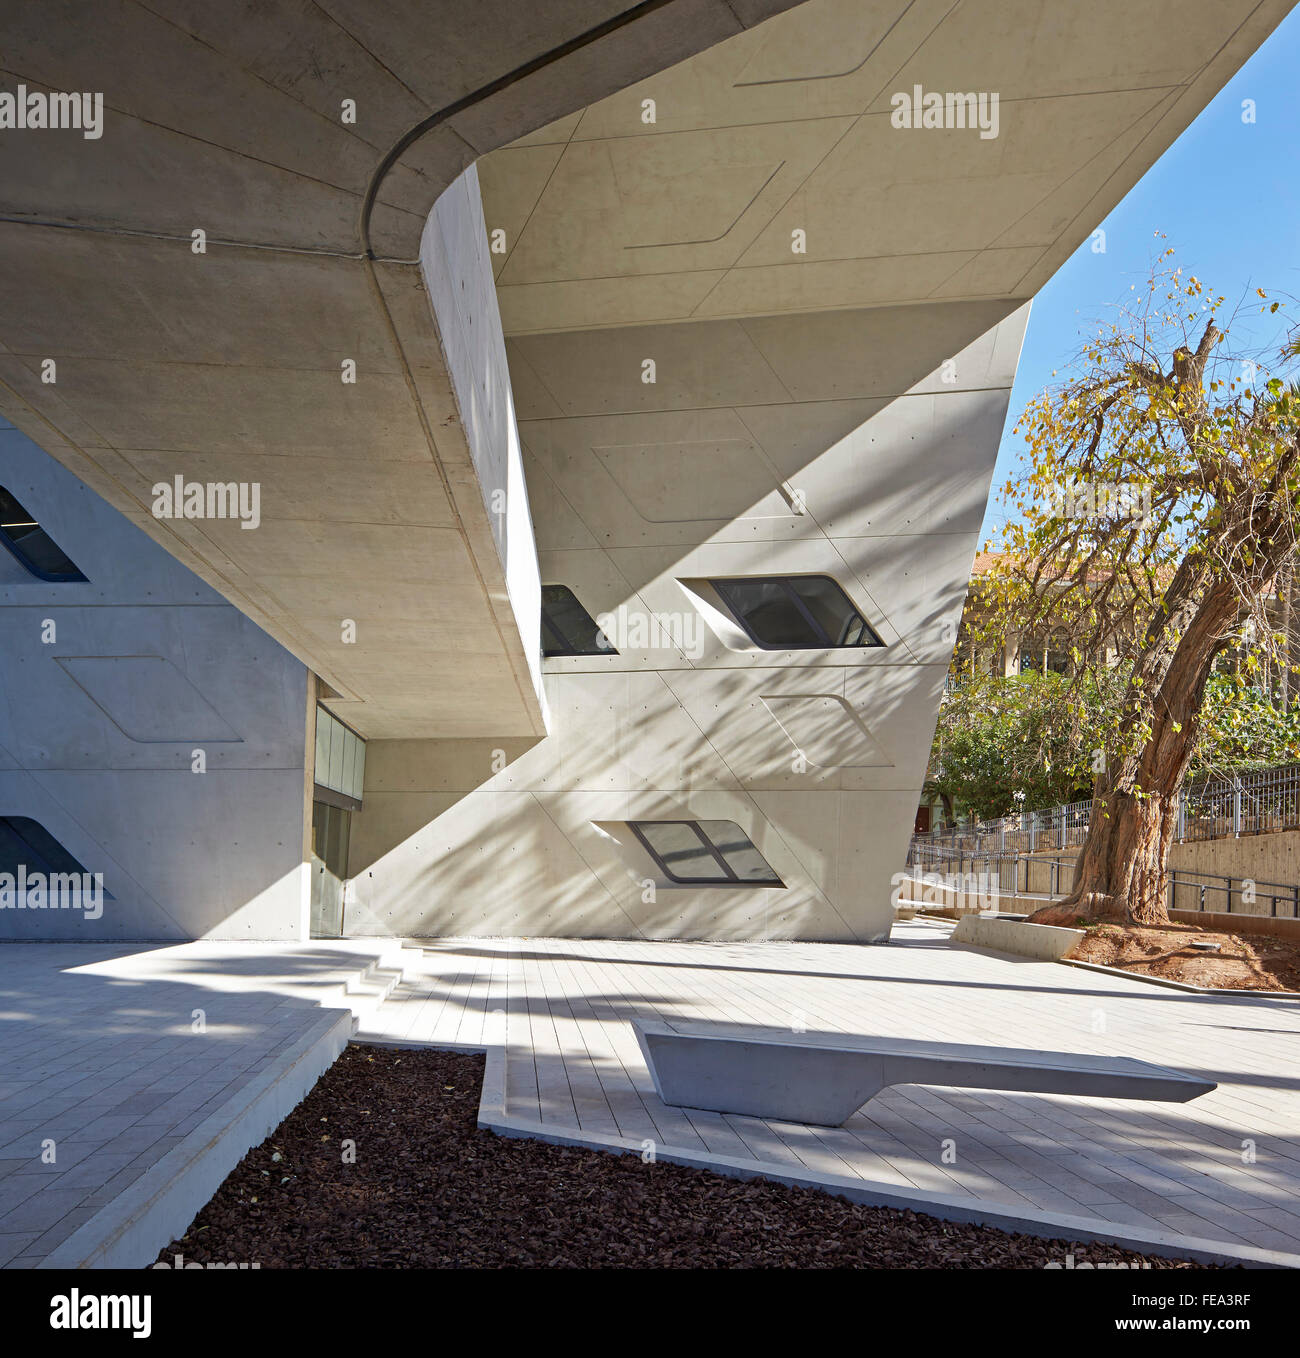 Externen Sitzgelegenheiten und Betonflächen. Issam Fares Institut, Beirut, Beirut, Libanon. Architekt: Zaha Hadid Architects, 2014. Stockfoto